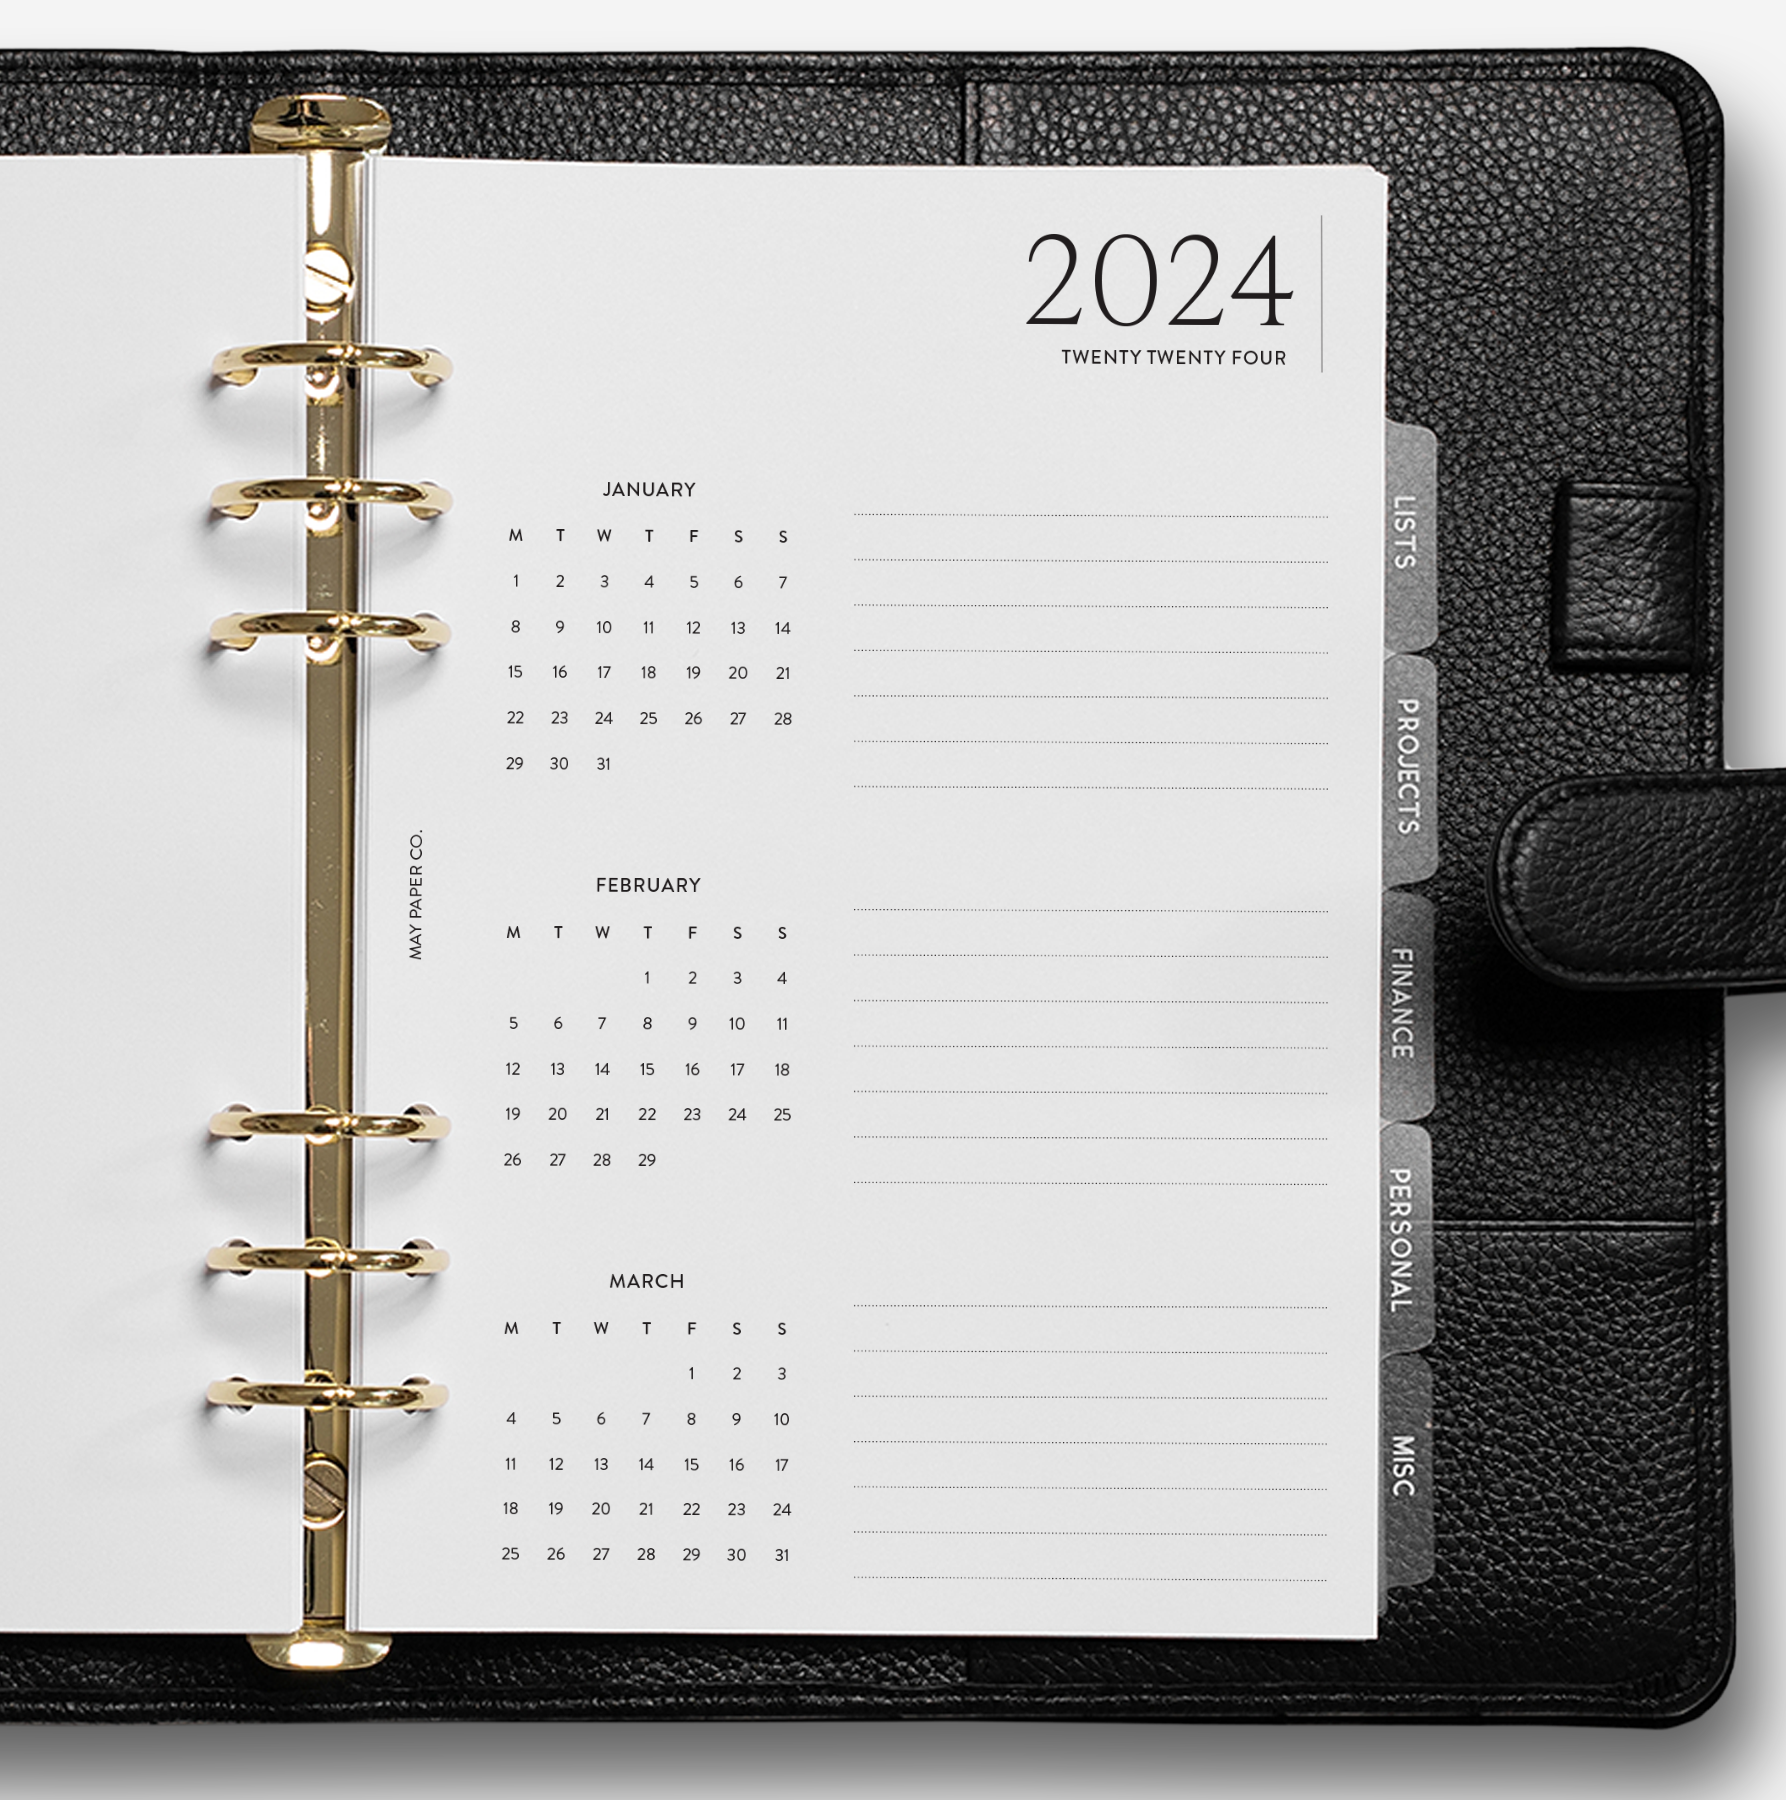 LV Agenda Medium Ring (MM) Refill - Notebook (Agenda) refill - MM size